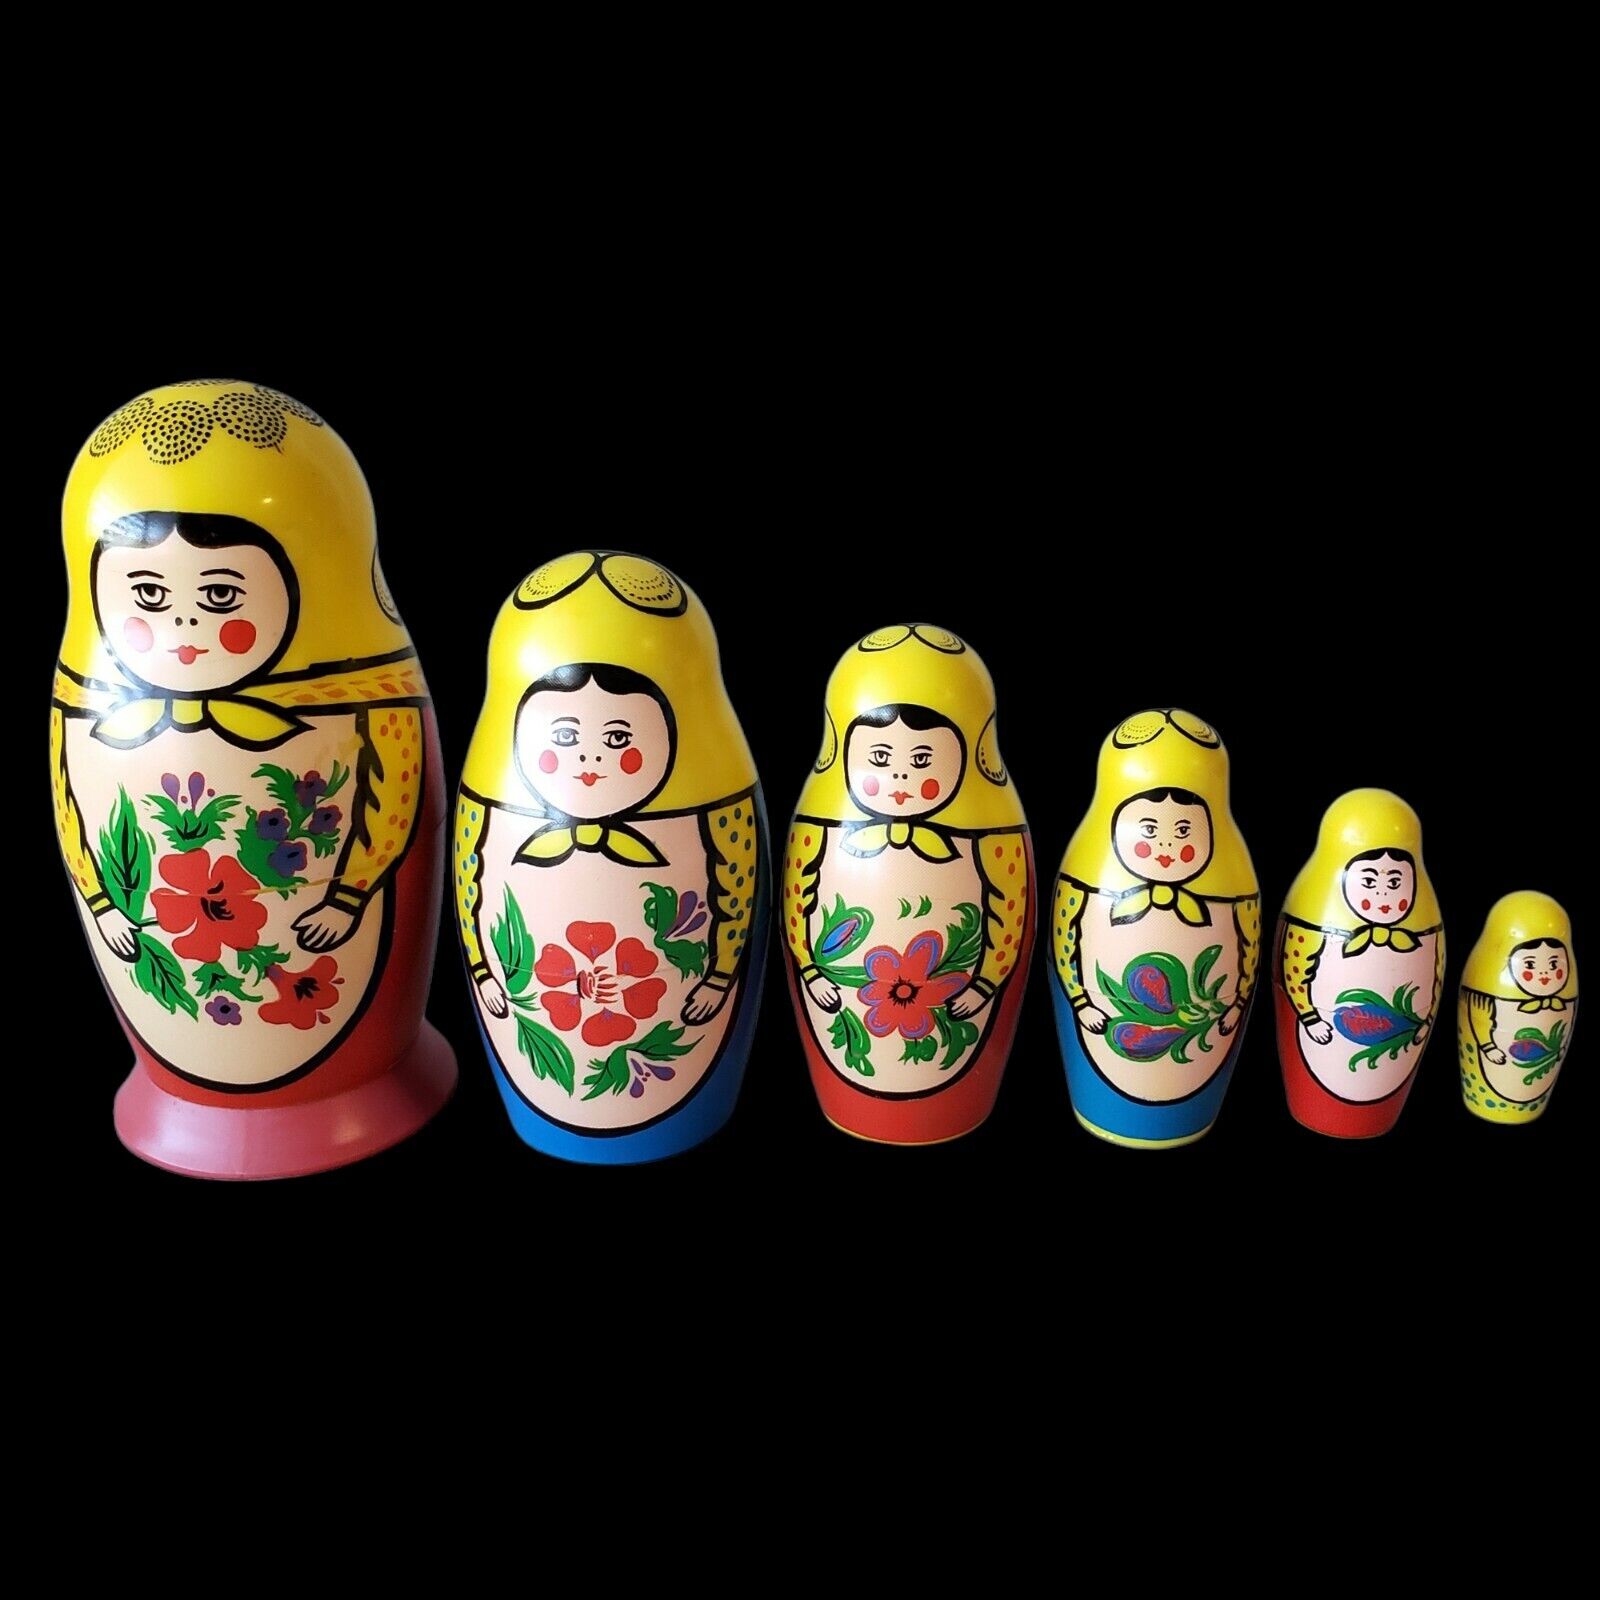 VTG Eichhorn Nesting Dolls Matryoshka Babushka MCM Mid Century 1950s German Made